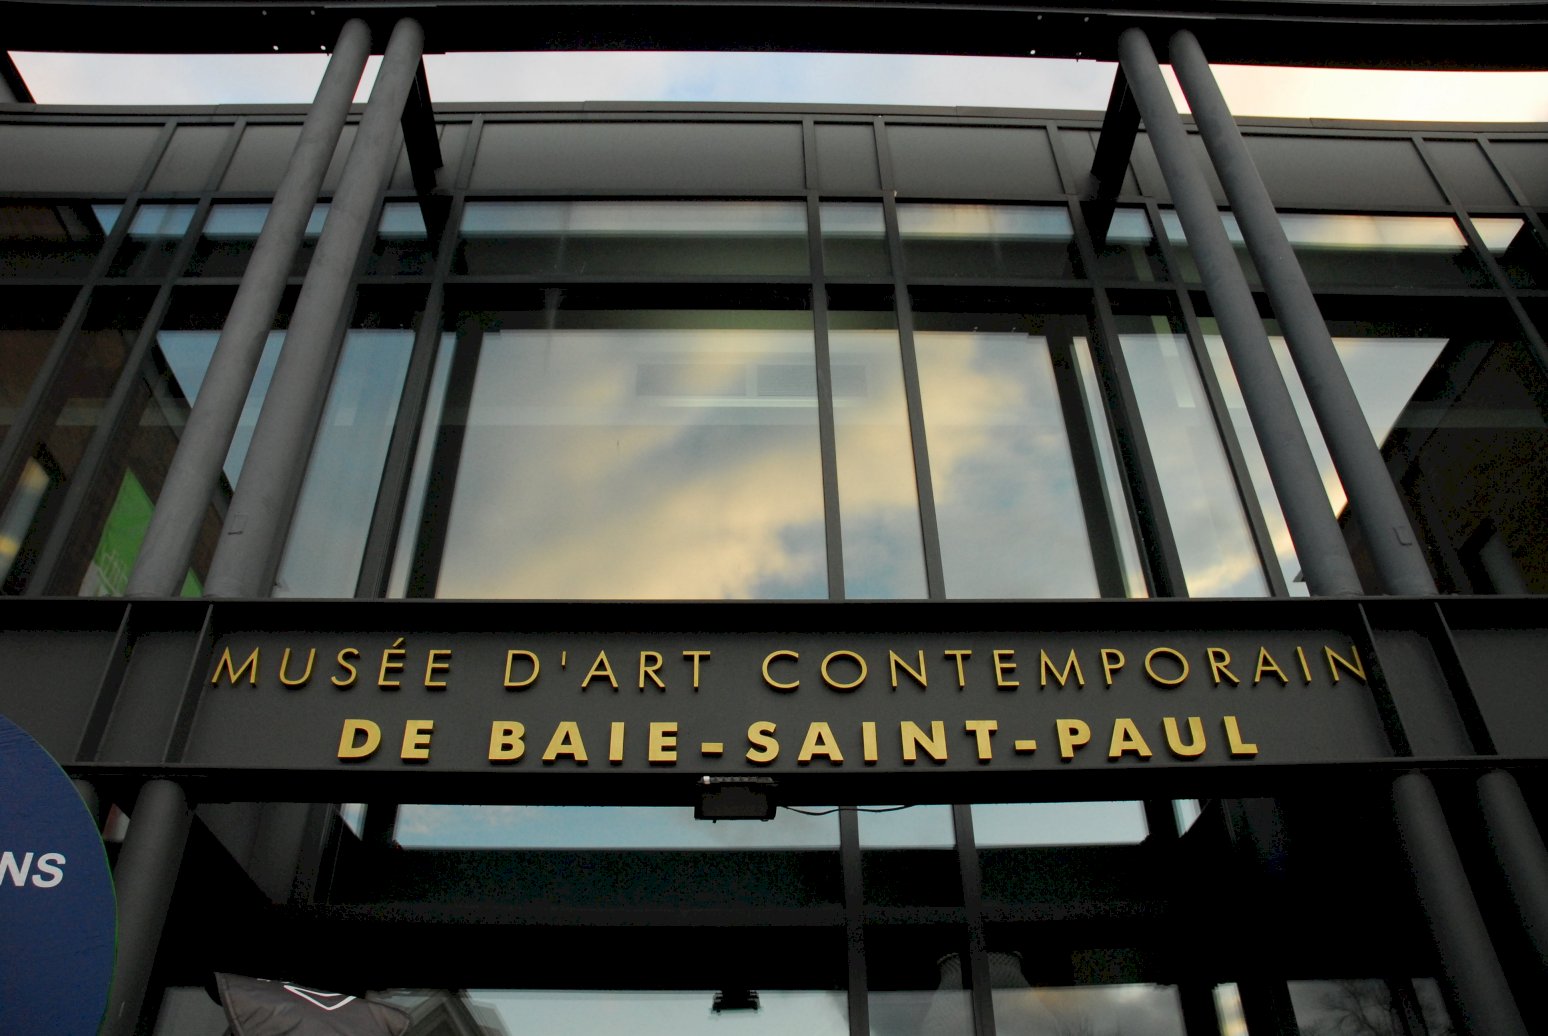 Le Musée d'art contemporain de Baie-Saint-Paul rouvre ses portes au public et présente deux nouvelles expositions